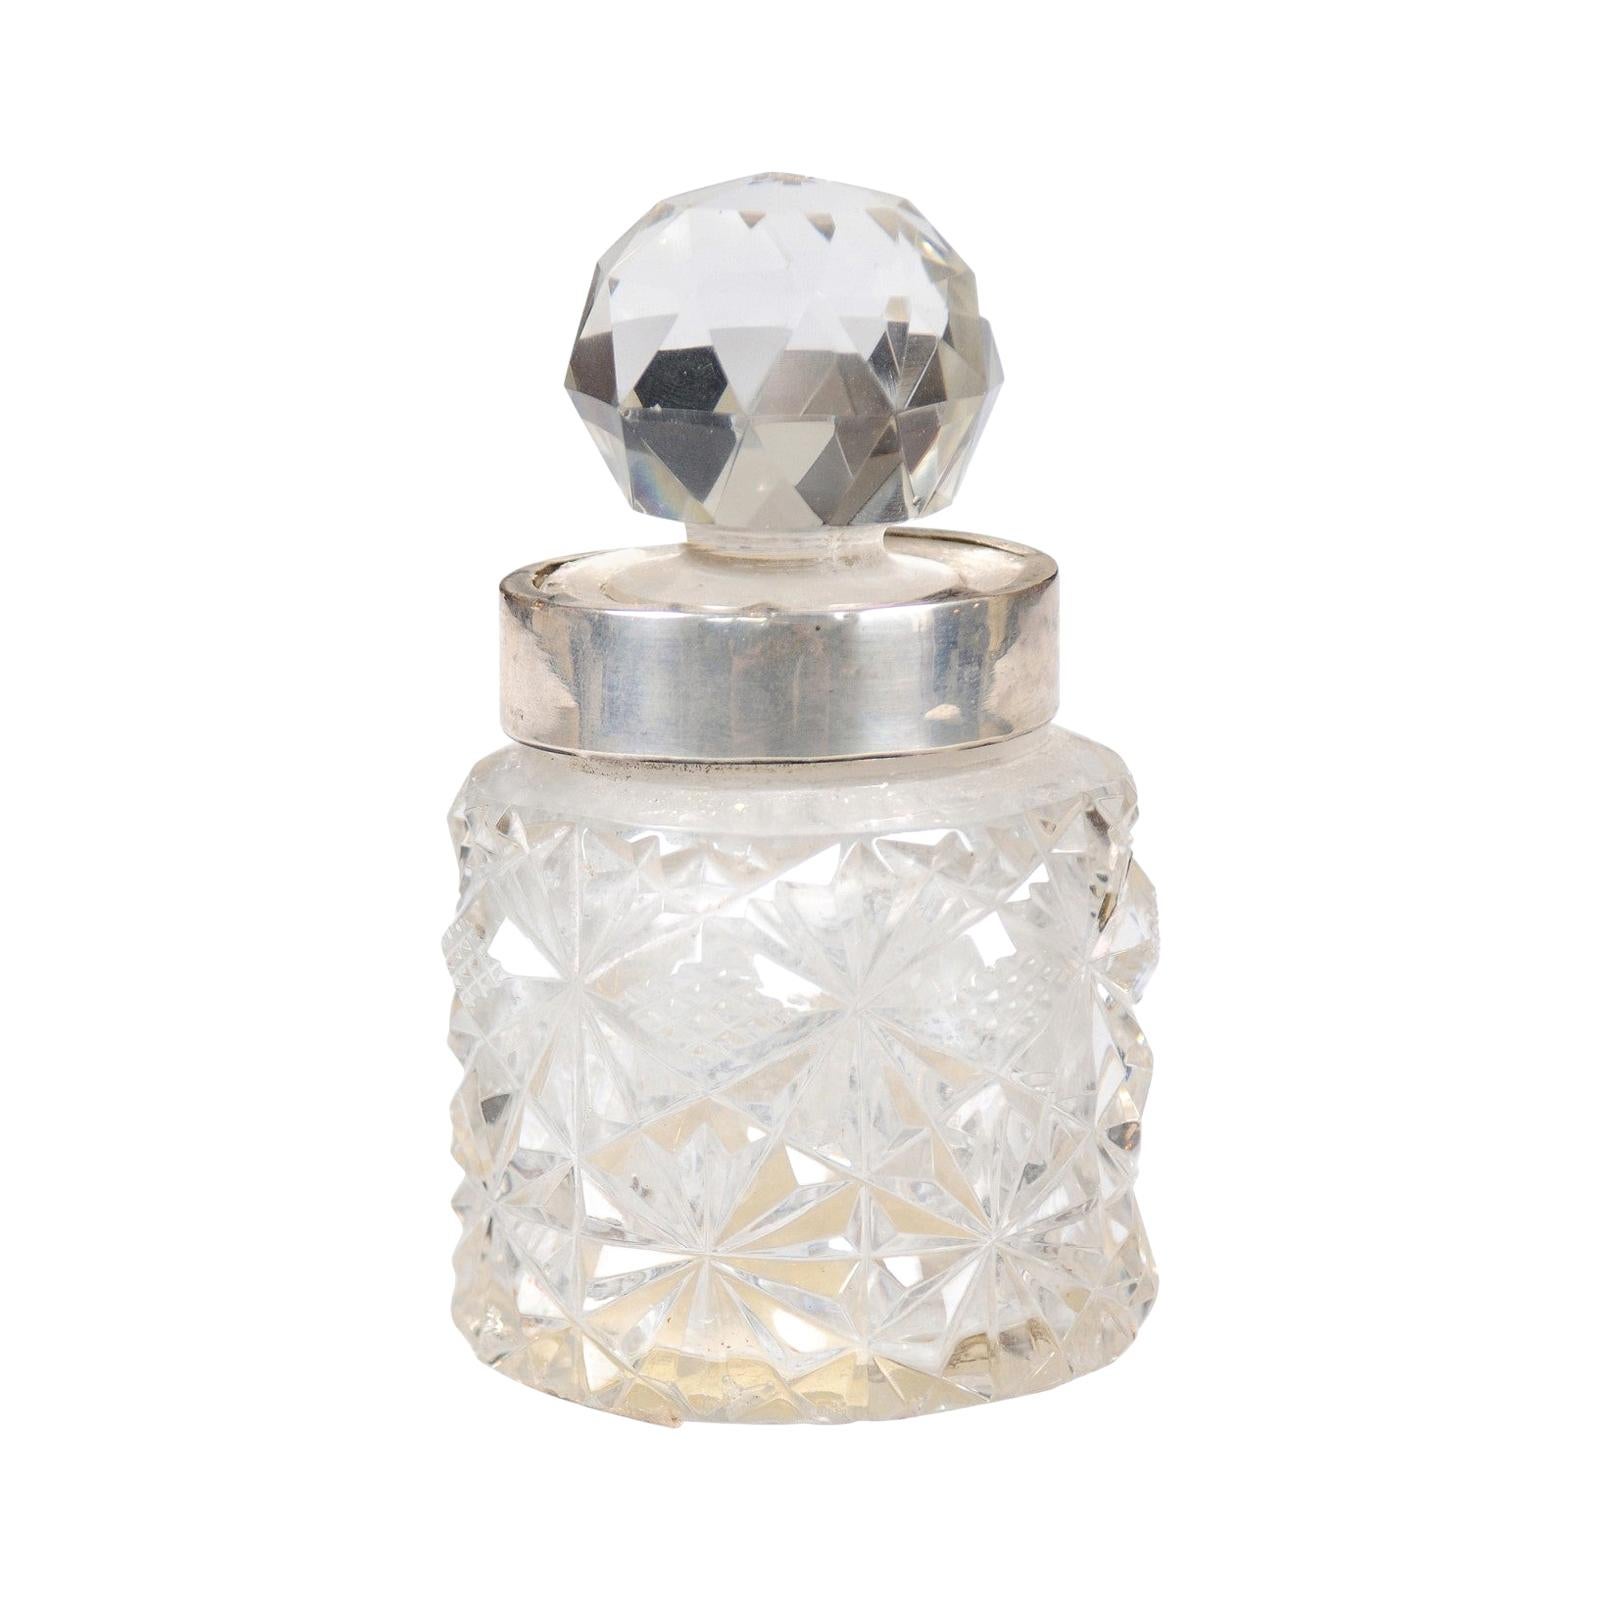 Englischer Krug aus Kristall und Silber des 19. Jahrhunderts mit Diamantmotiven und Kugelstopper